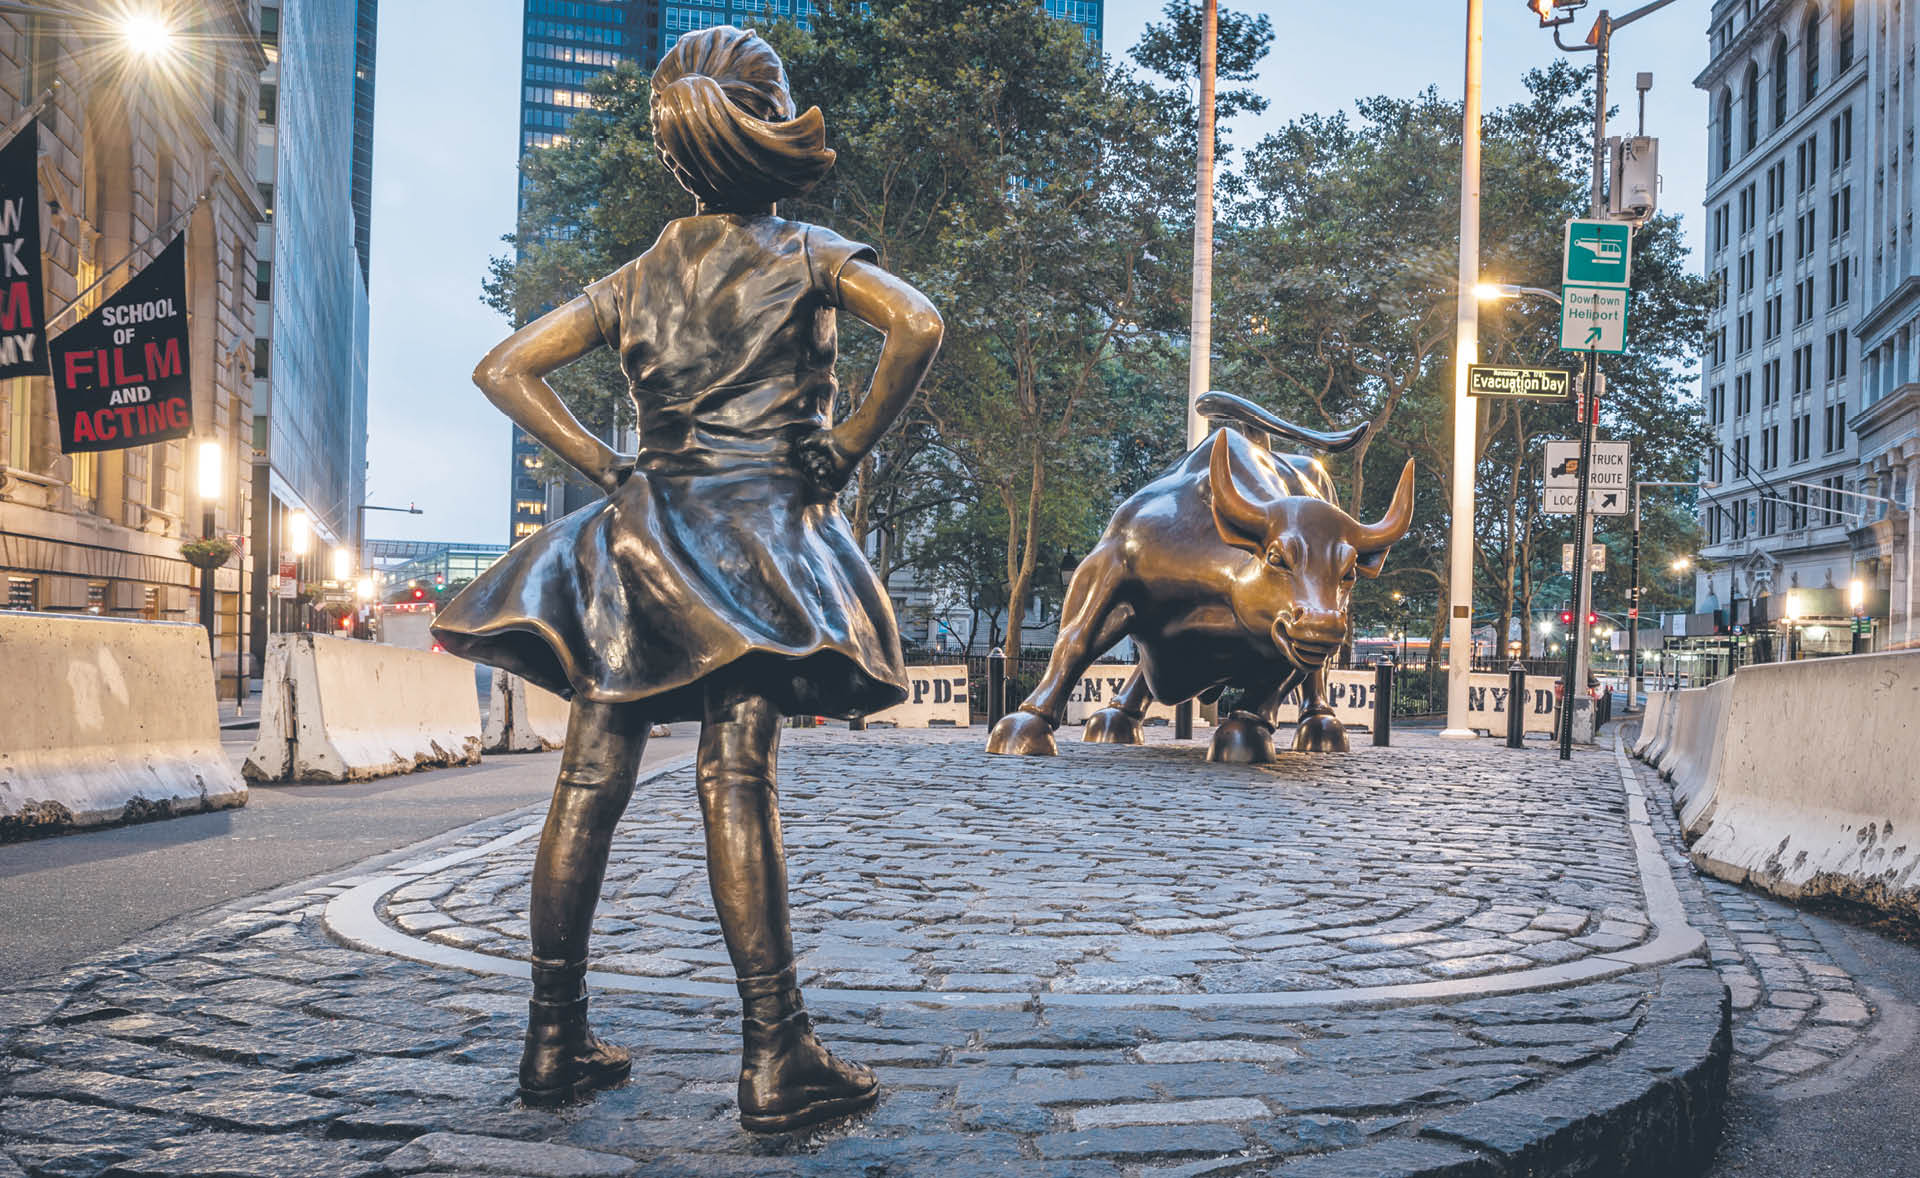 „Fearless Girl” została w 2018 r. zabrana sprzed rzeźby byka na Wall Street zgodnie z życzeniem autorki Kristen Visbal